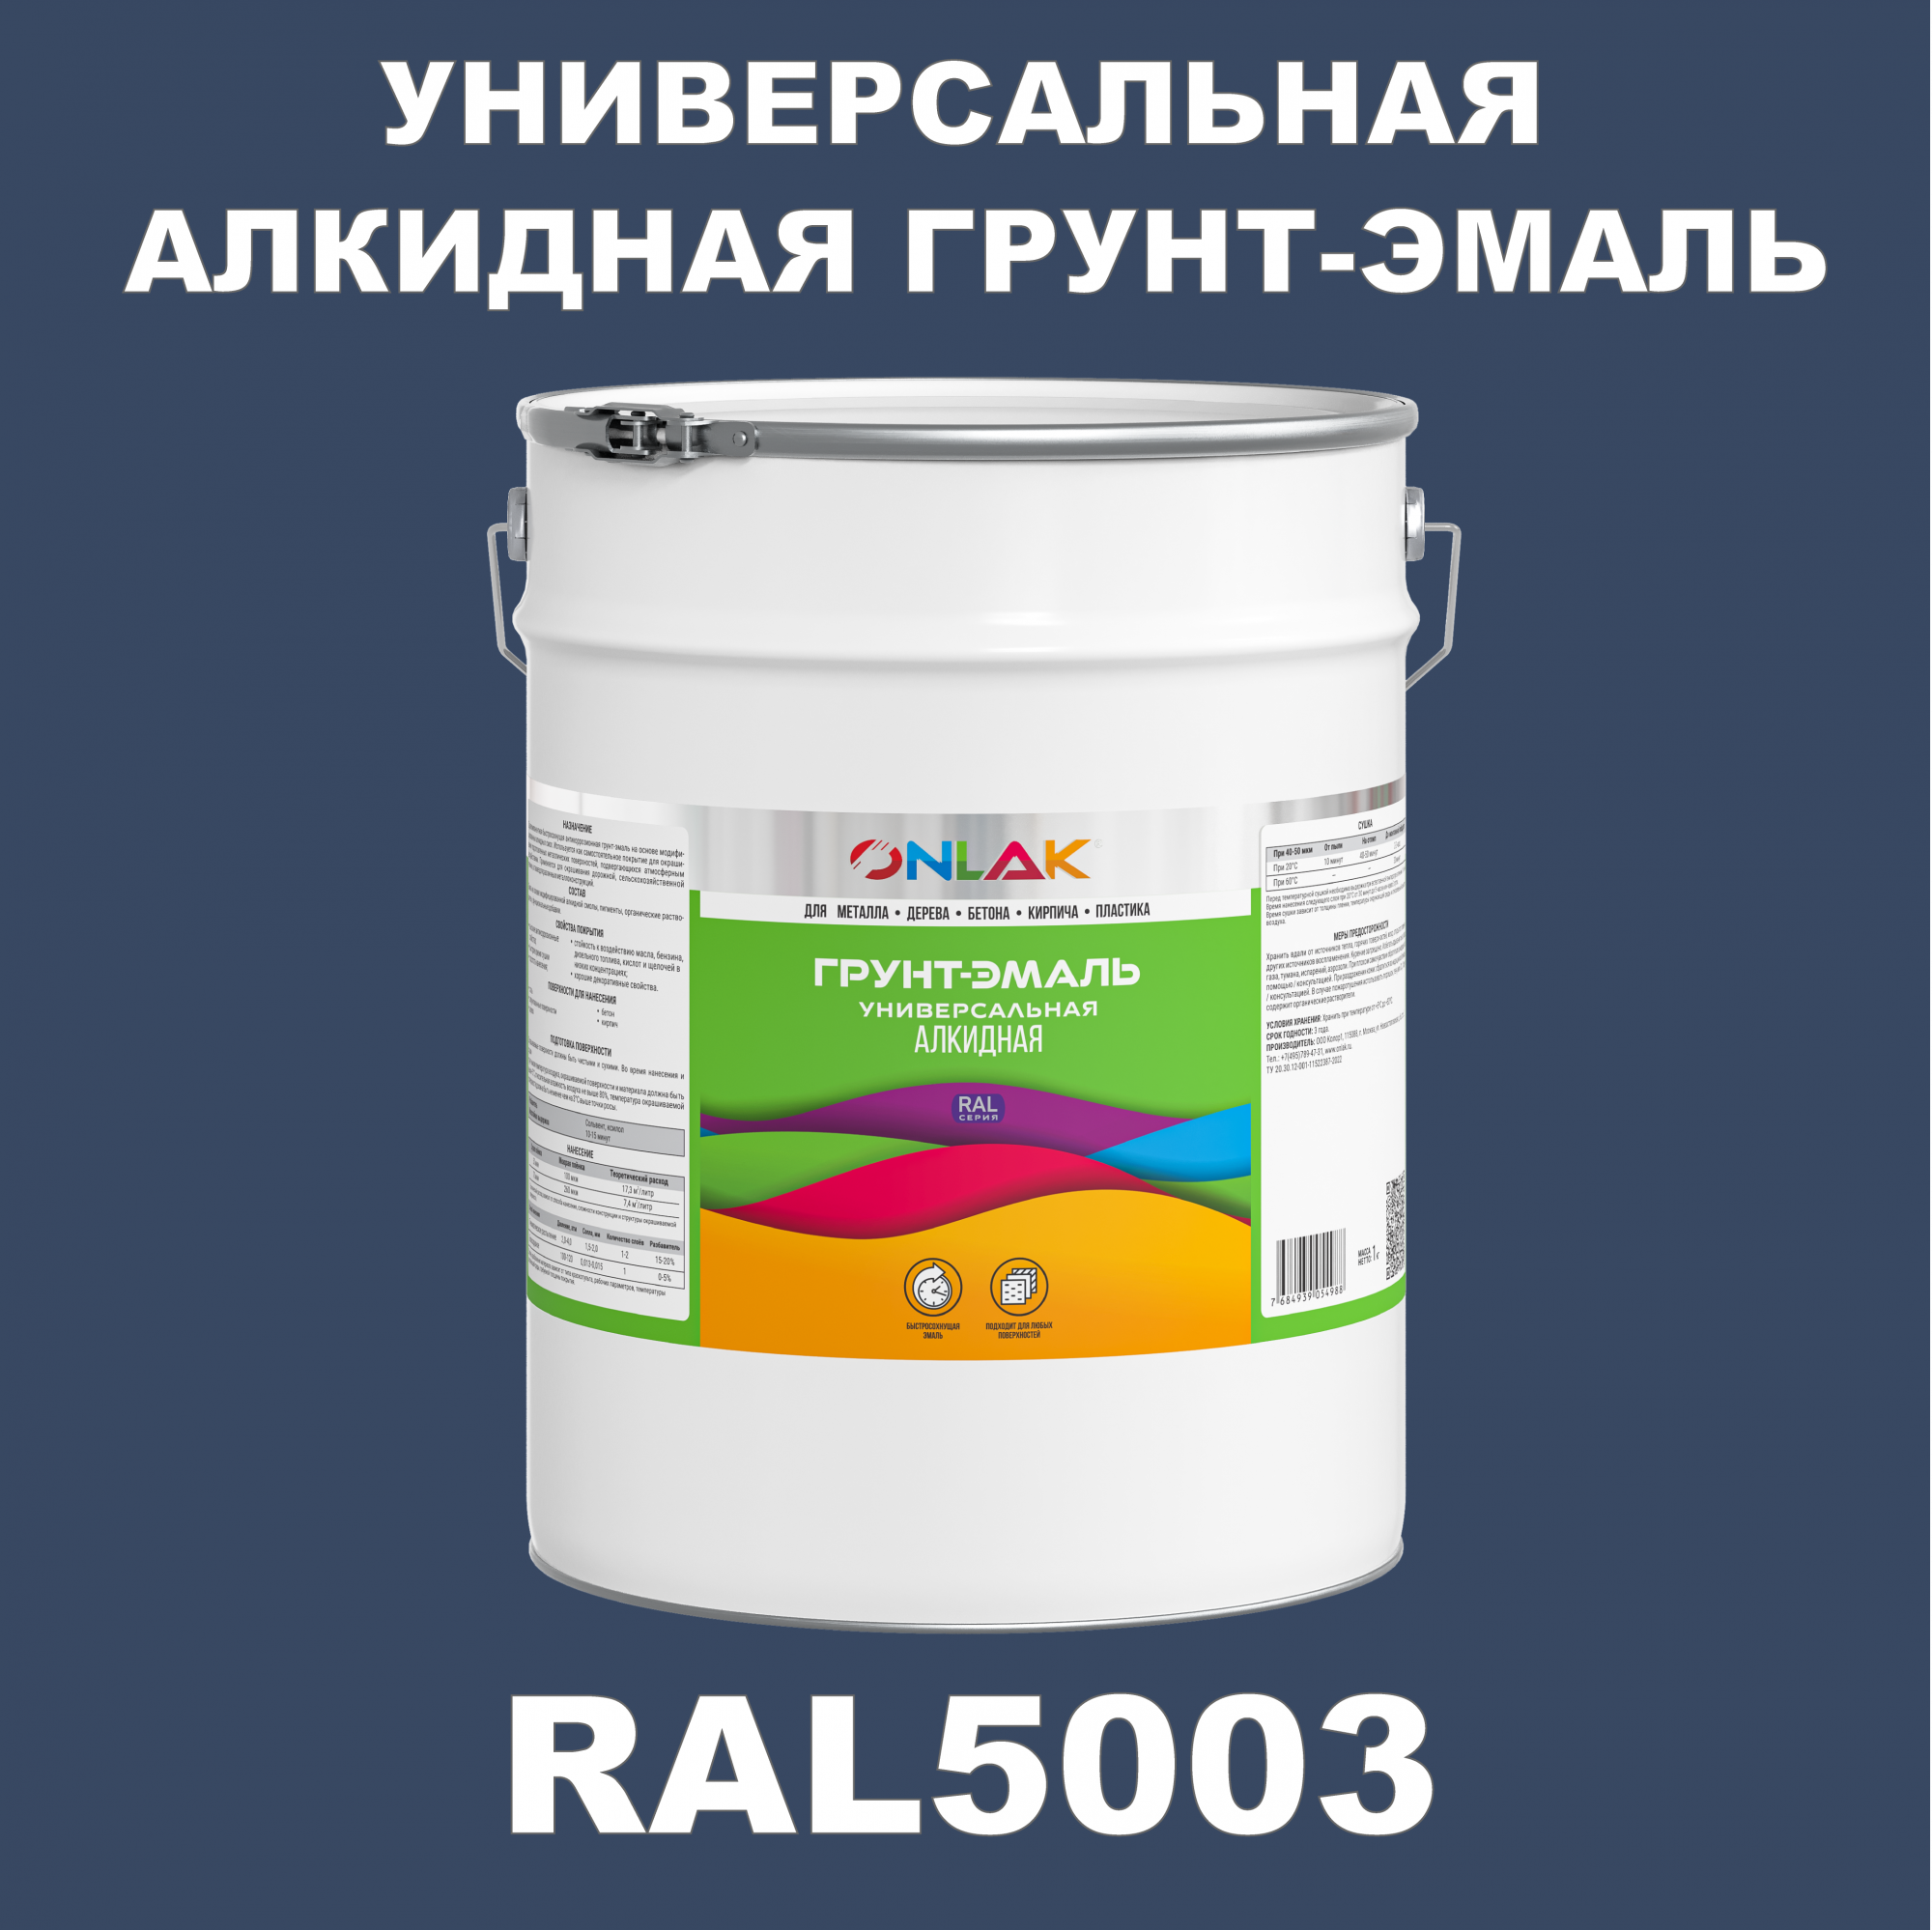 Грунт-эмаль ONLAK 1К RAL5003 антикоррозионная алкидная по металлу по ржавчине 20 кг грунт эмаль рас по ржавчине алкидная синяя 0 9 кг